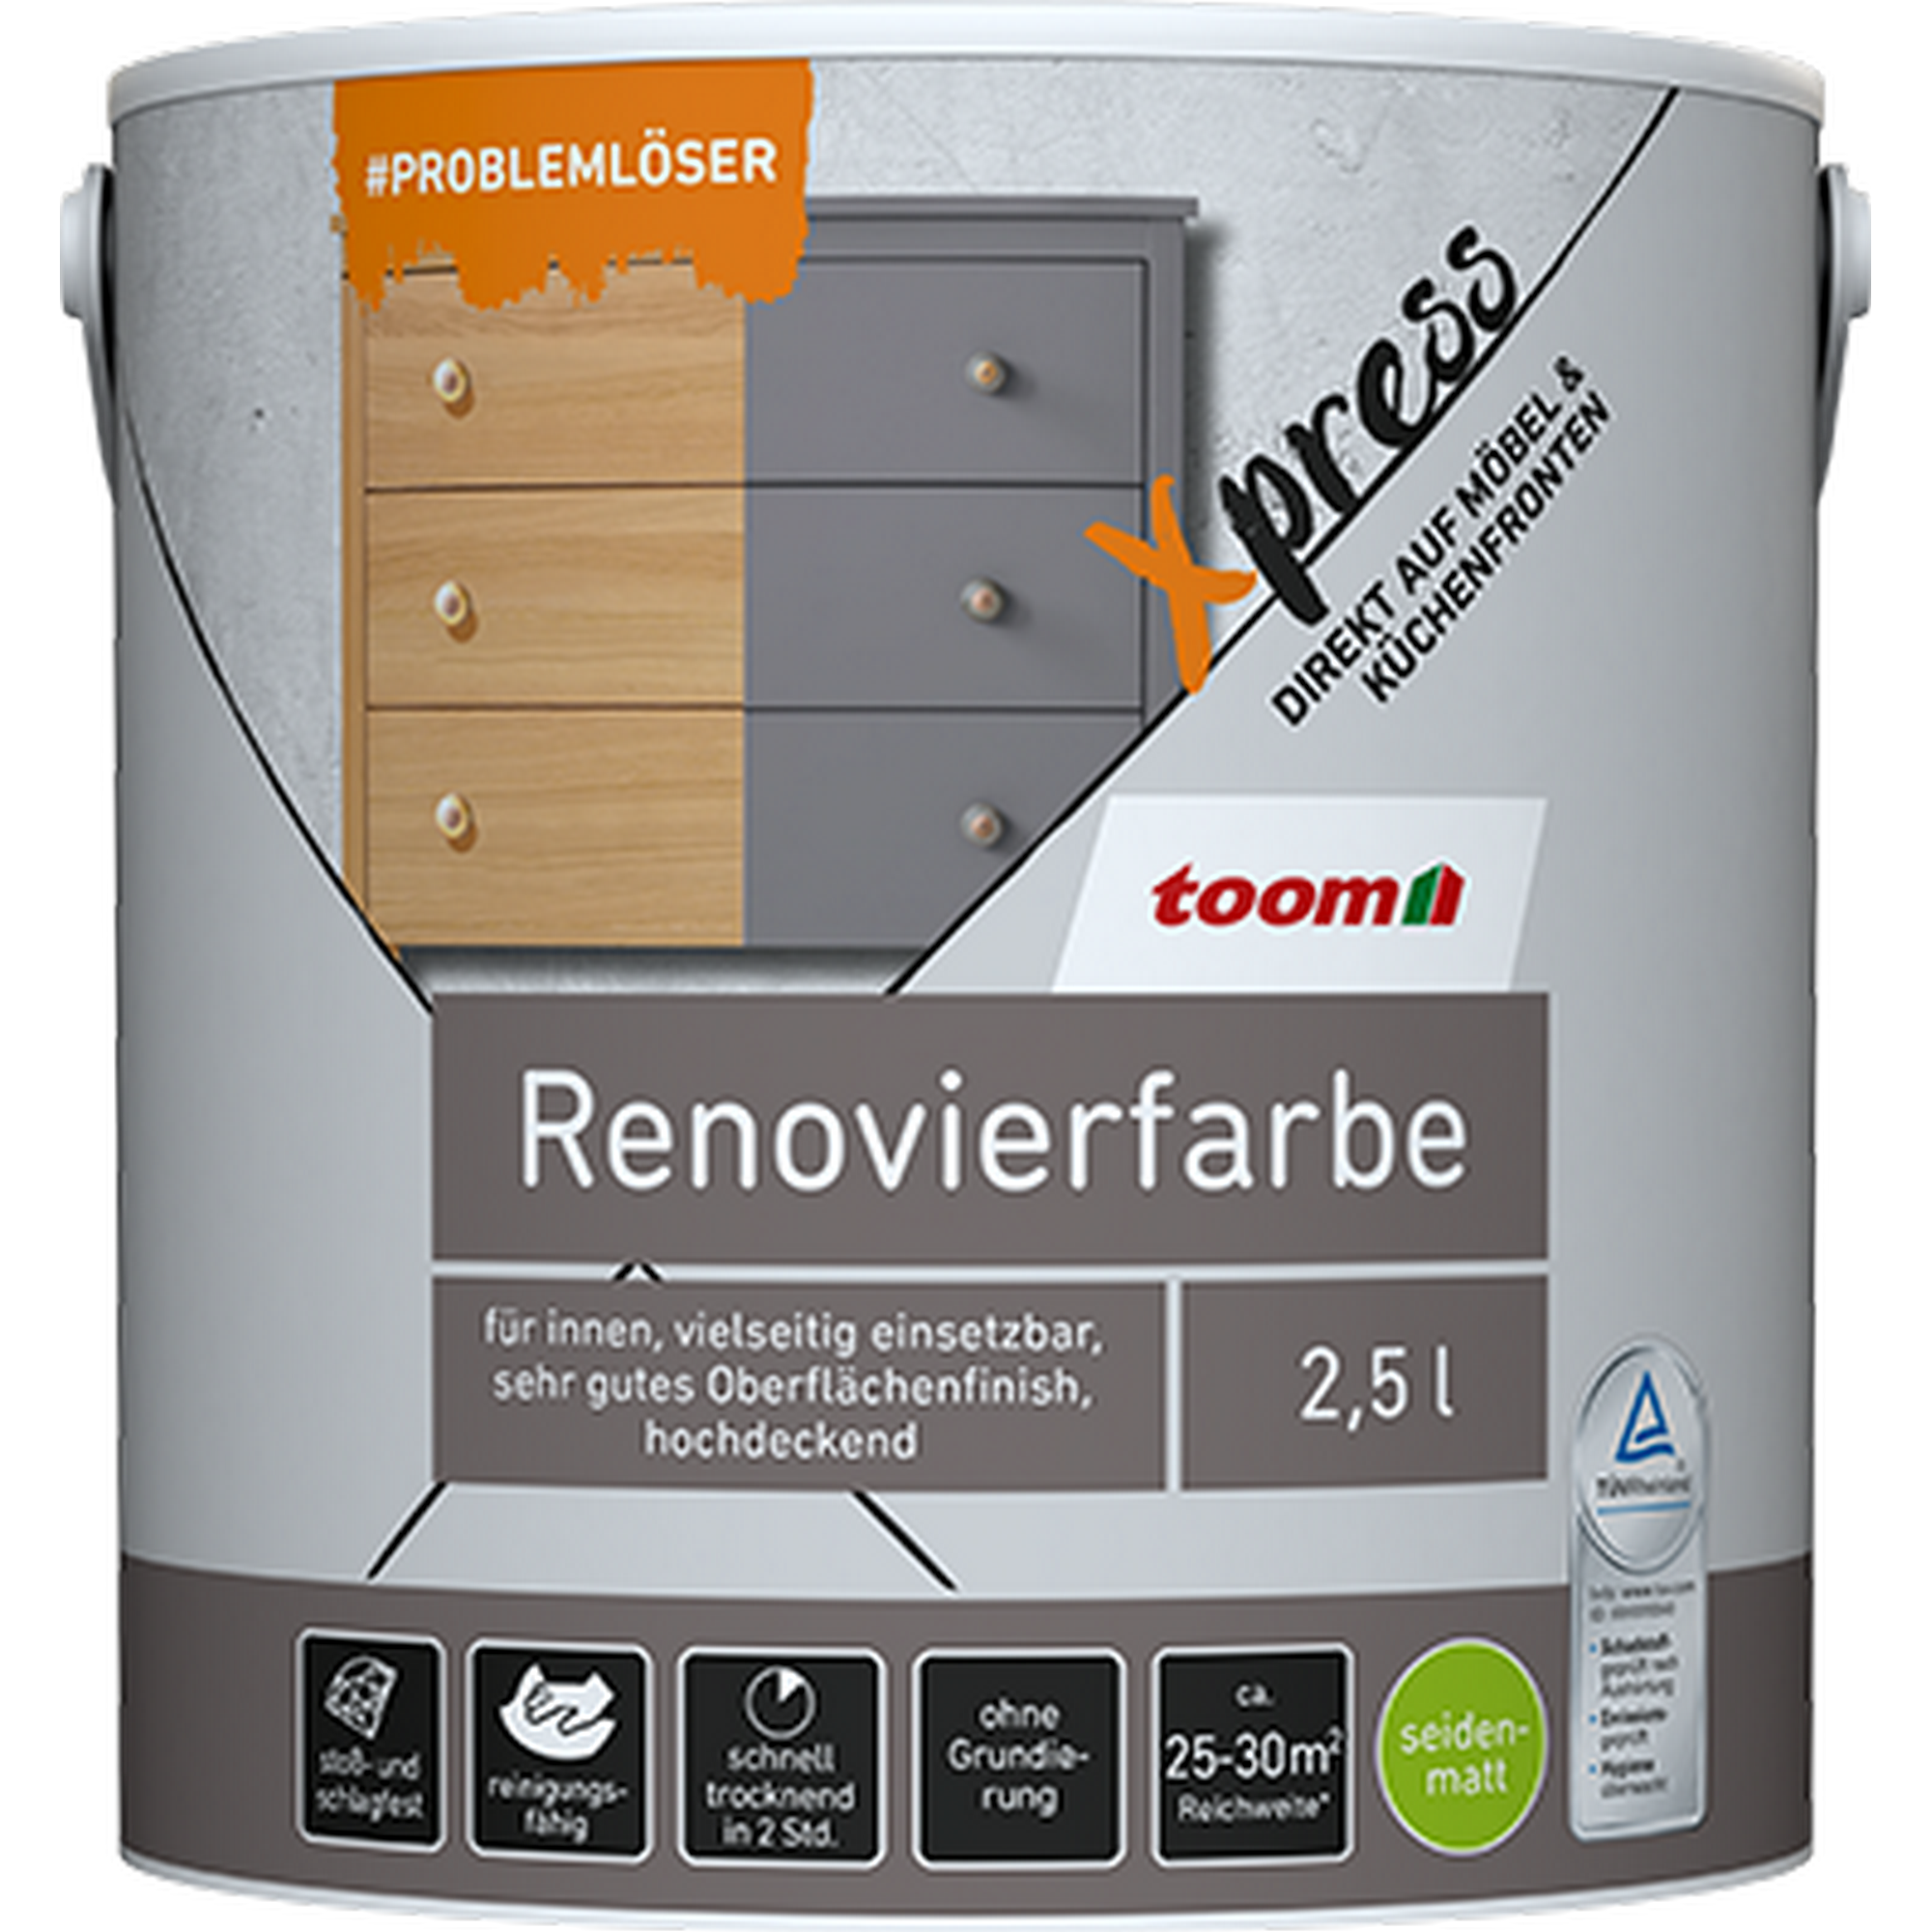 Renovierfarbe für Möbel- und Küchenfronten zartgrau seidenmatt 2,5 l + product picture